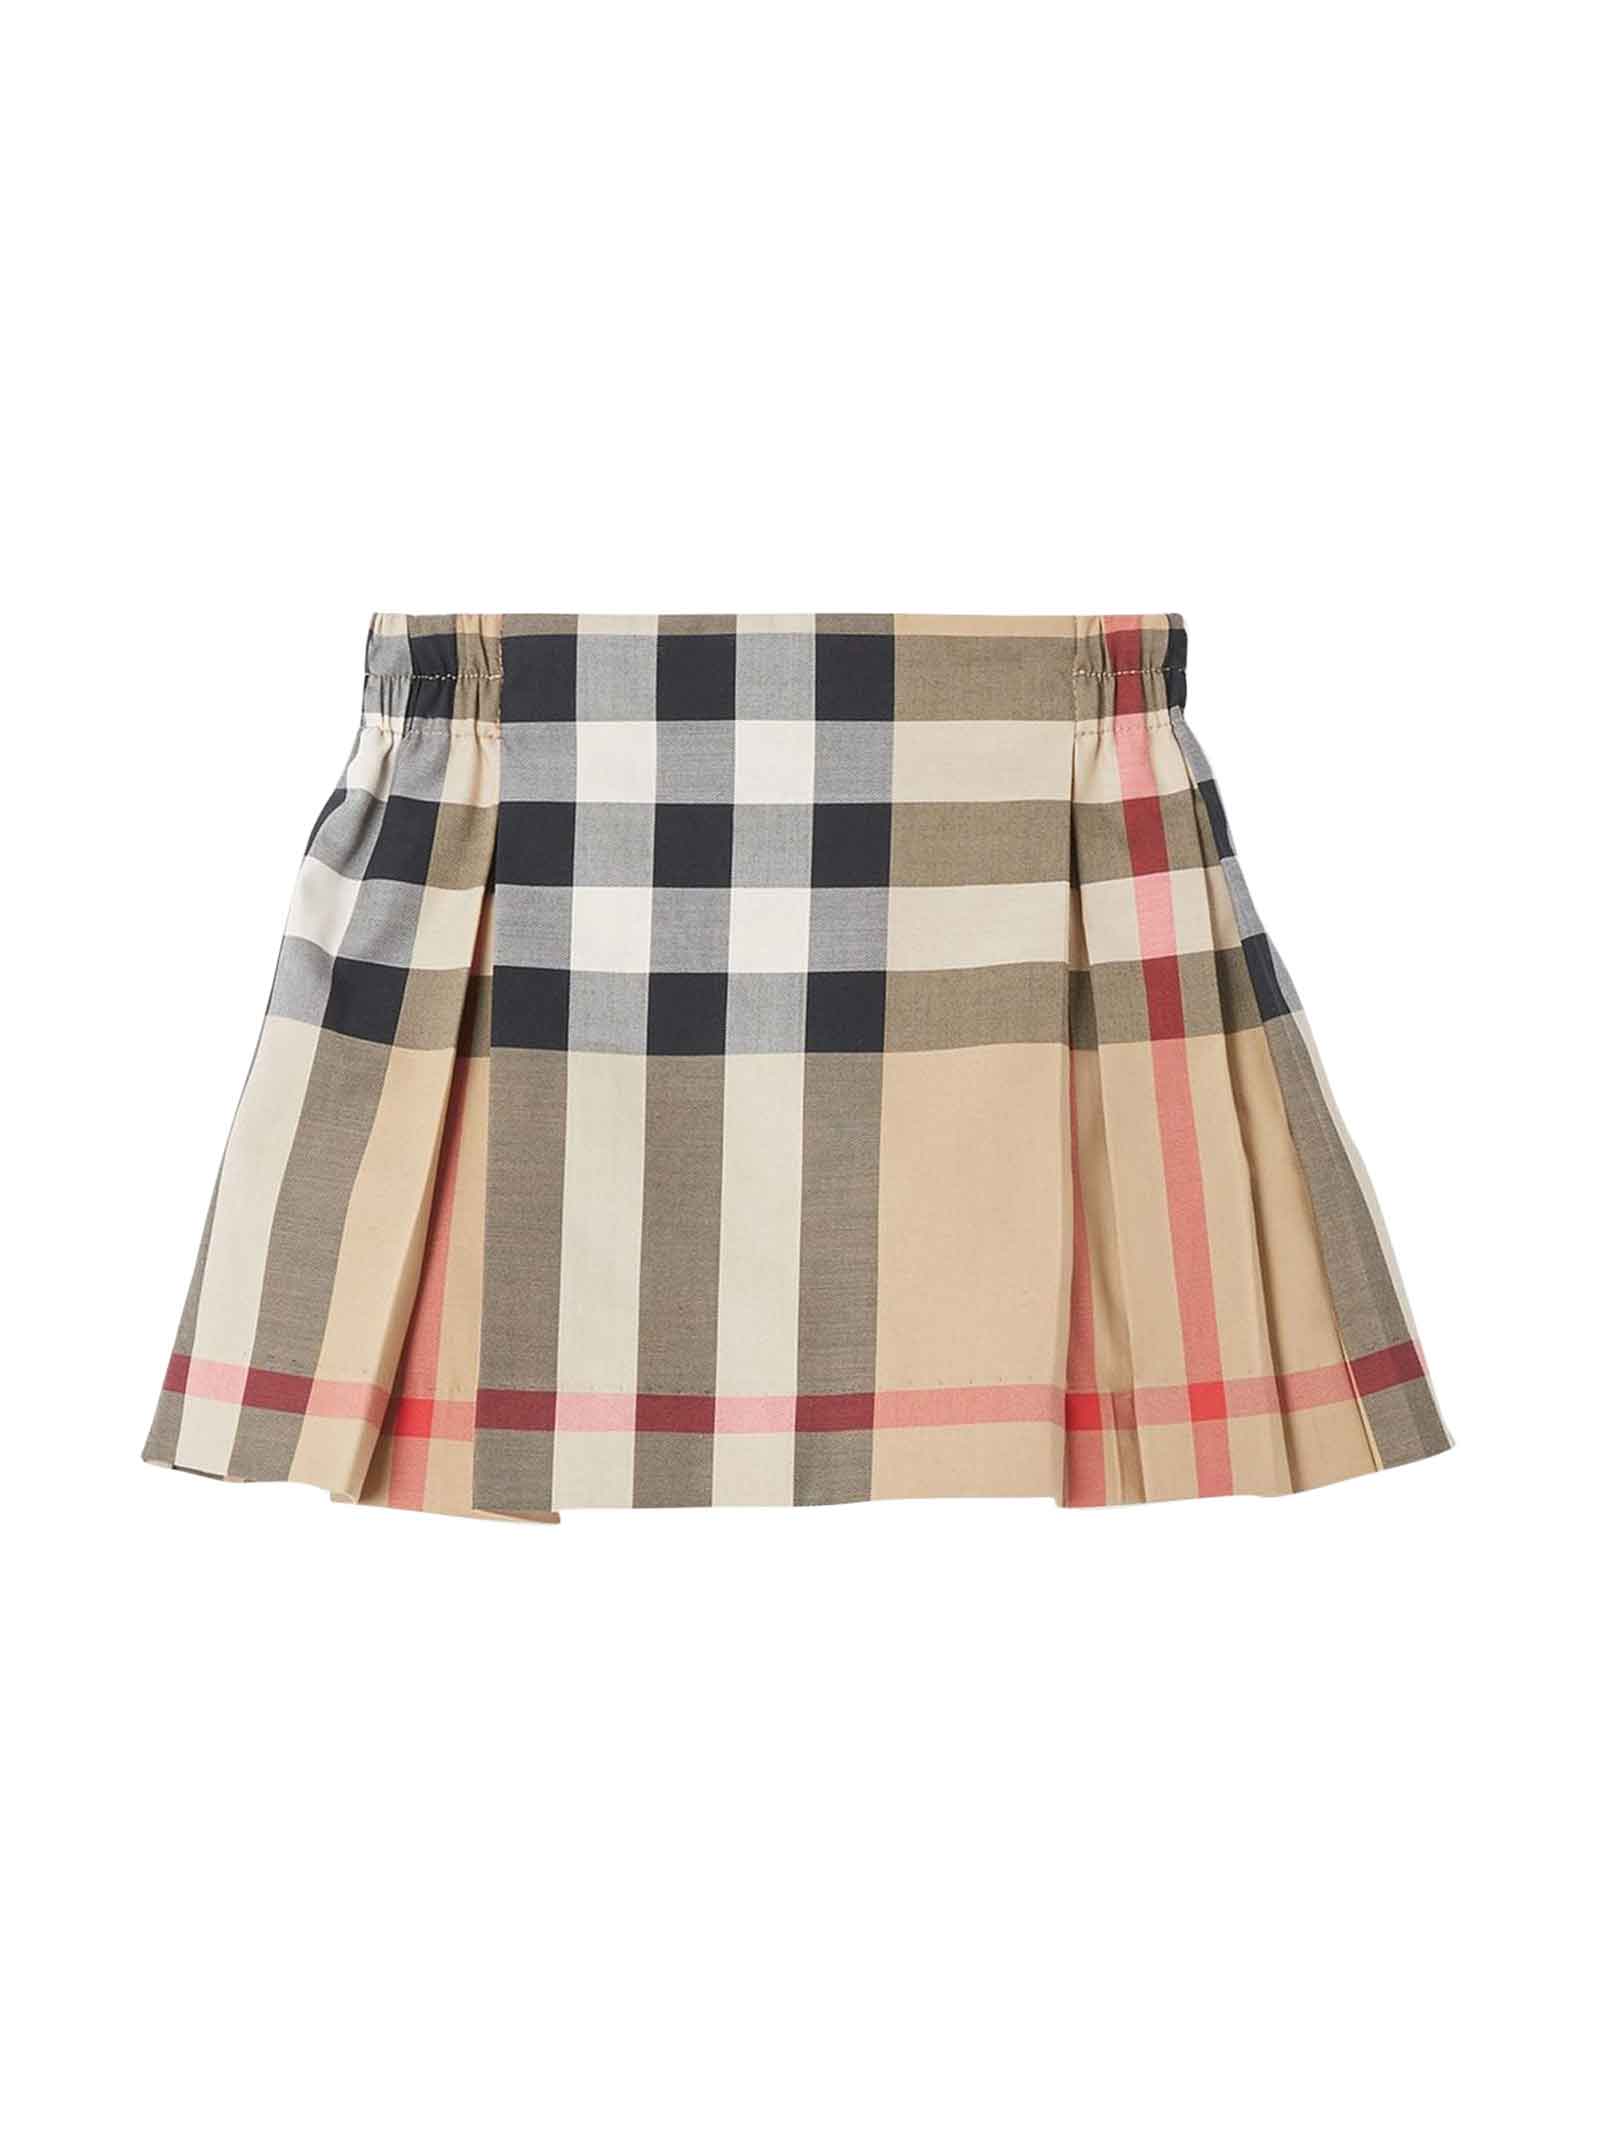 Burberry Check Print Skirt